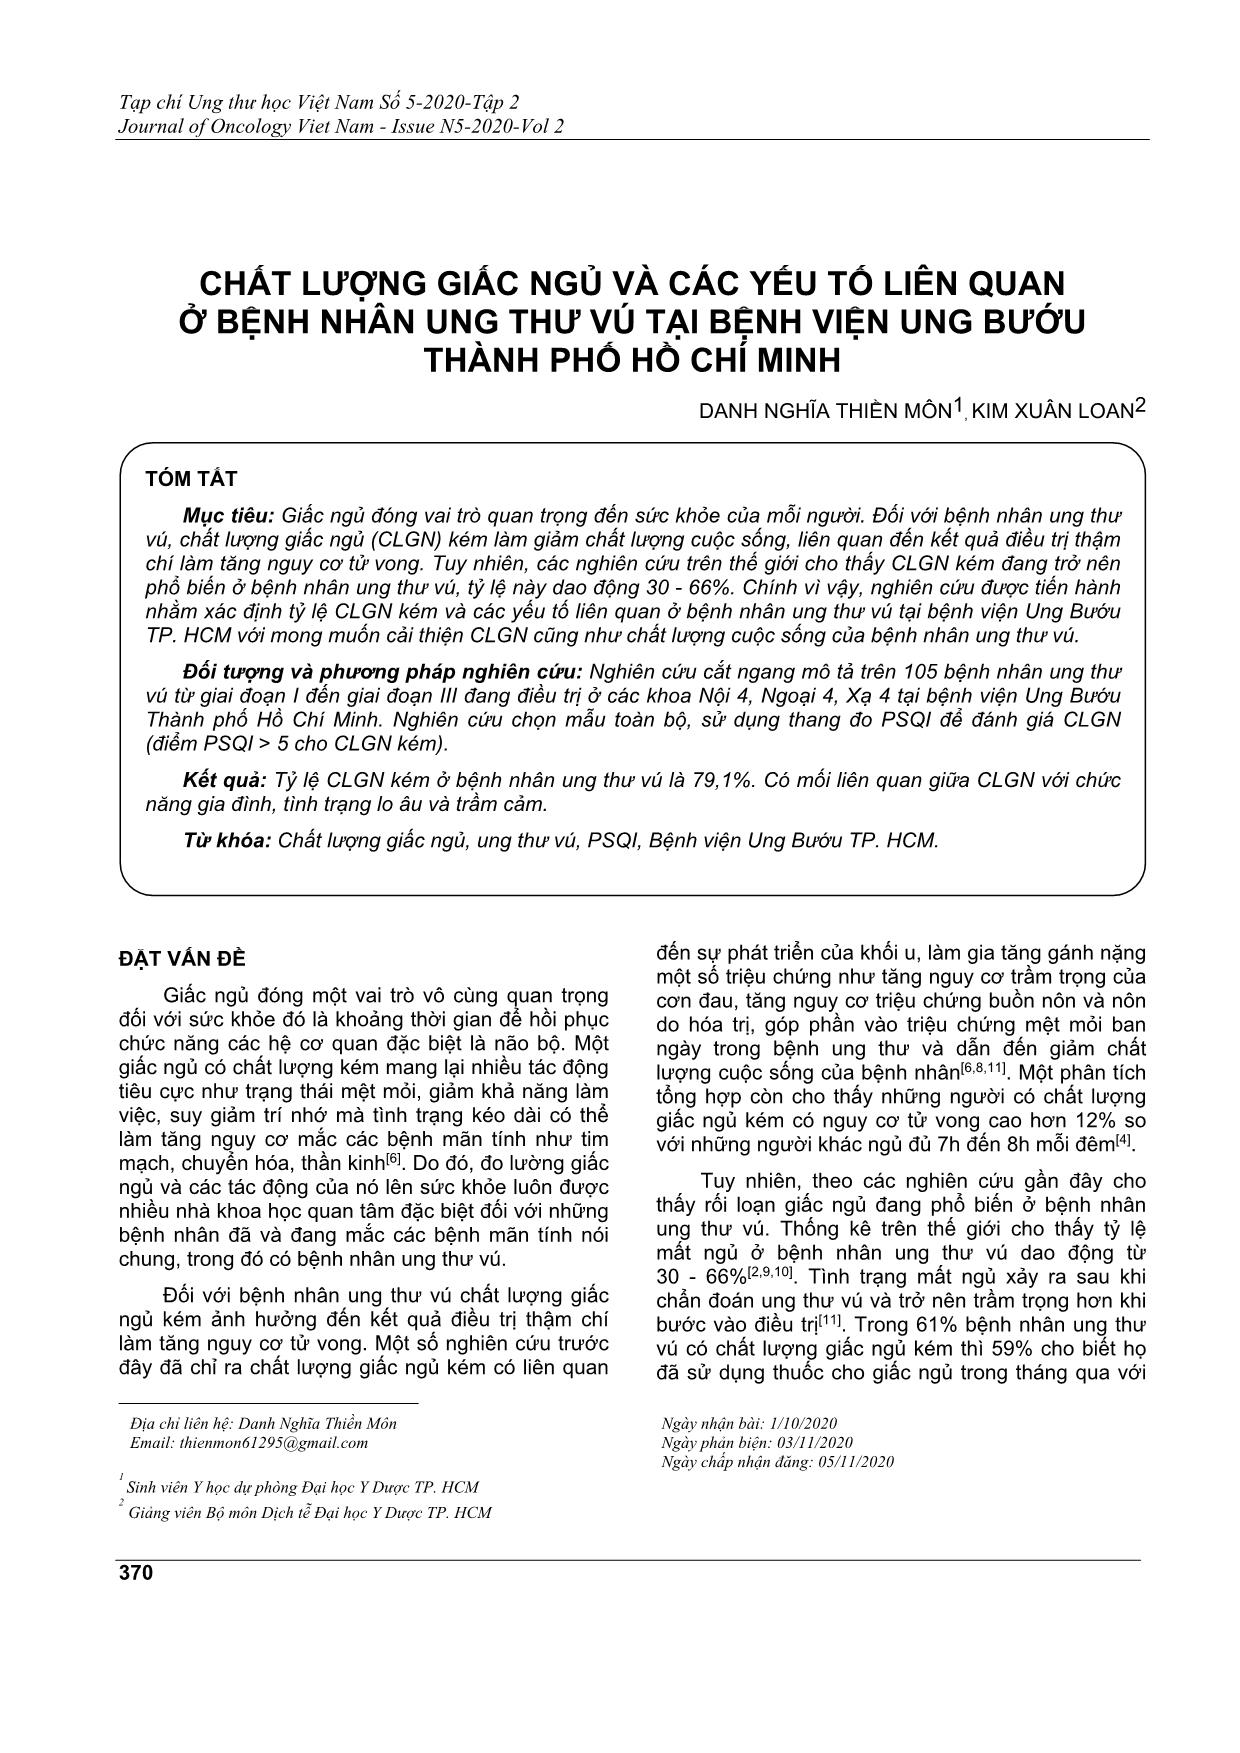 Chất lượng giấc ngủ và các yếu tố liên quan ở bệnh nhân ung thư vú tại bệnh viện ung bướu thành phố Hồ Chí Minh trang 1